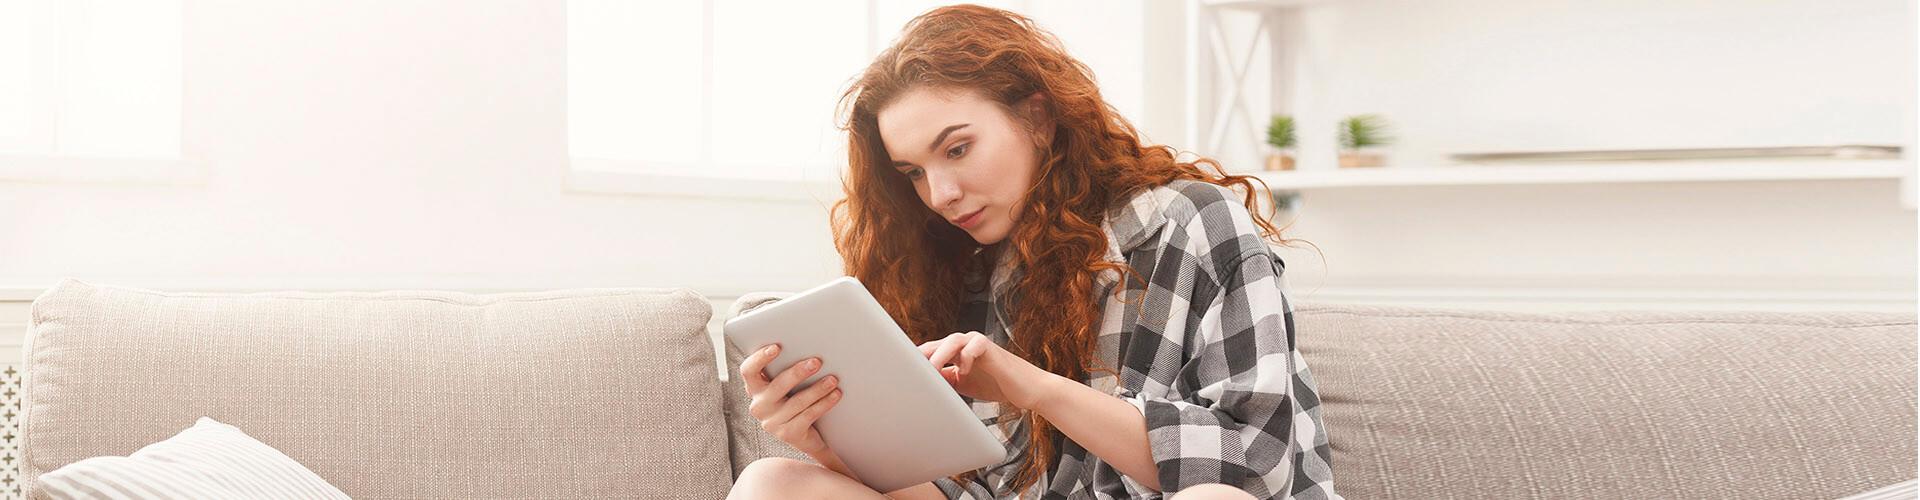 Compte de Pagament Bàsic - Chica jove amb una camisa de quadres asseguda en el sofà de la seua casa amb una tablet